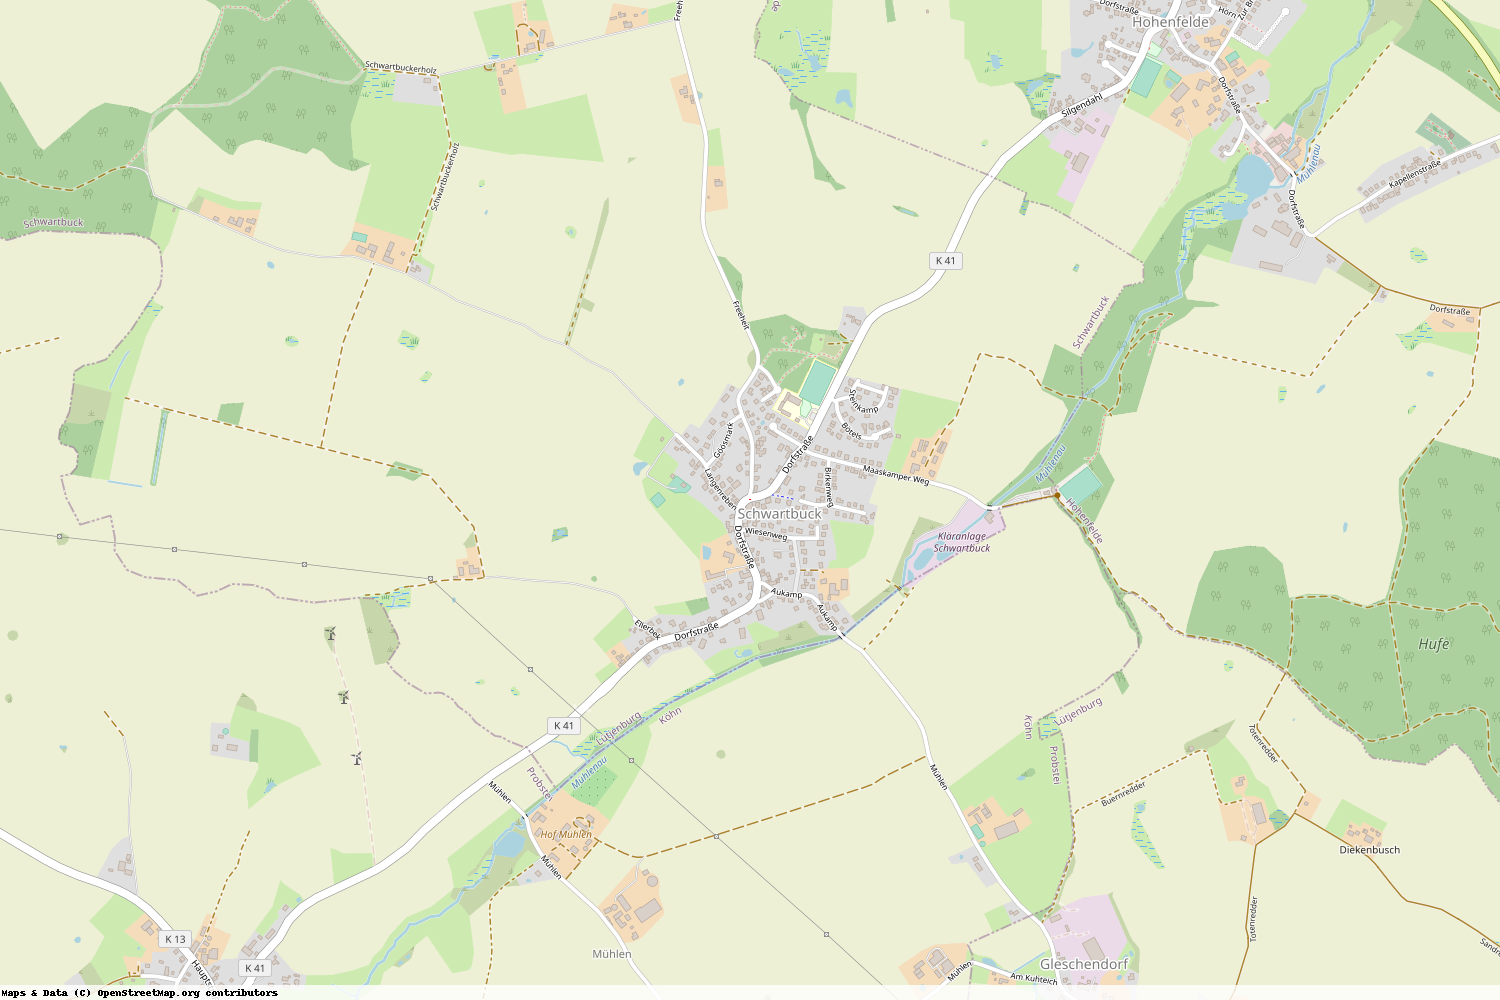 Ist gerade Stromausfall in Schleswig-Holstein - Plön - Schwartbuck?